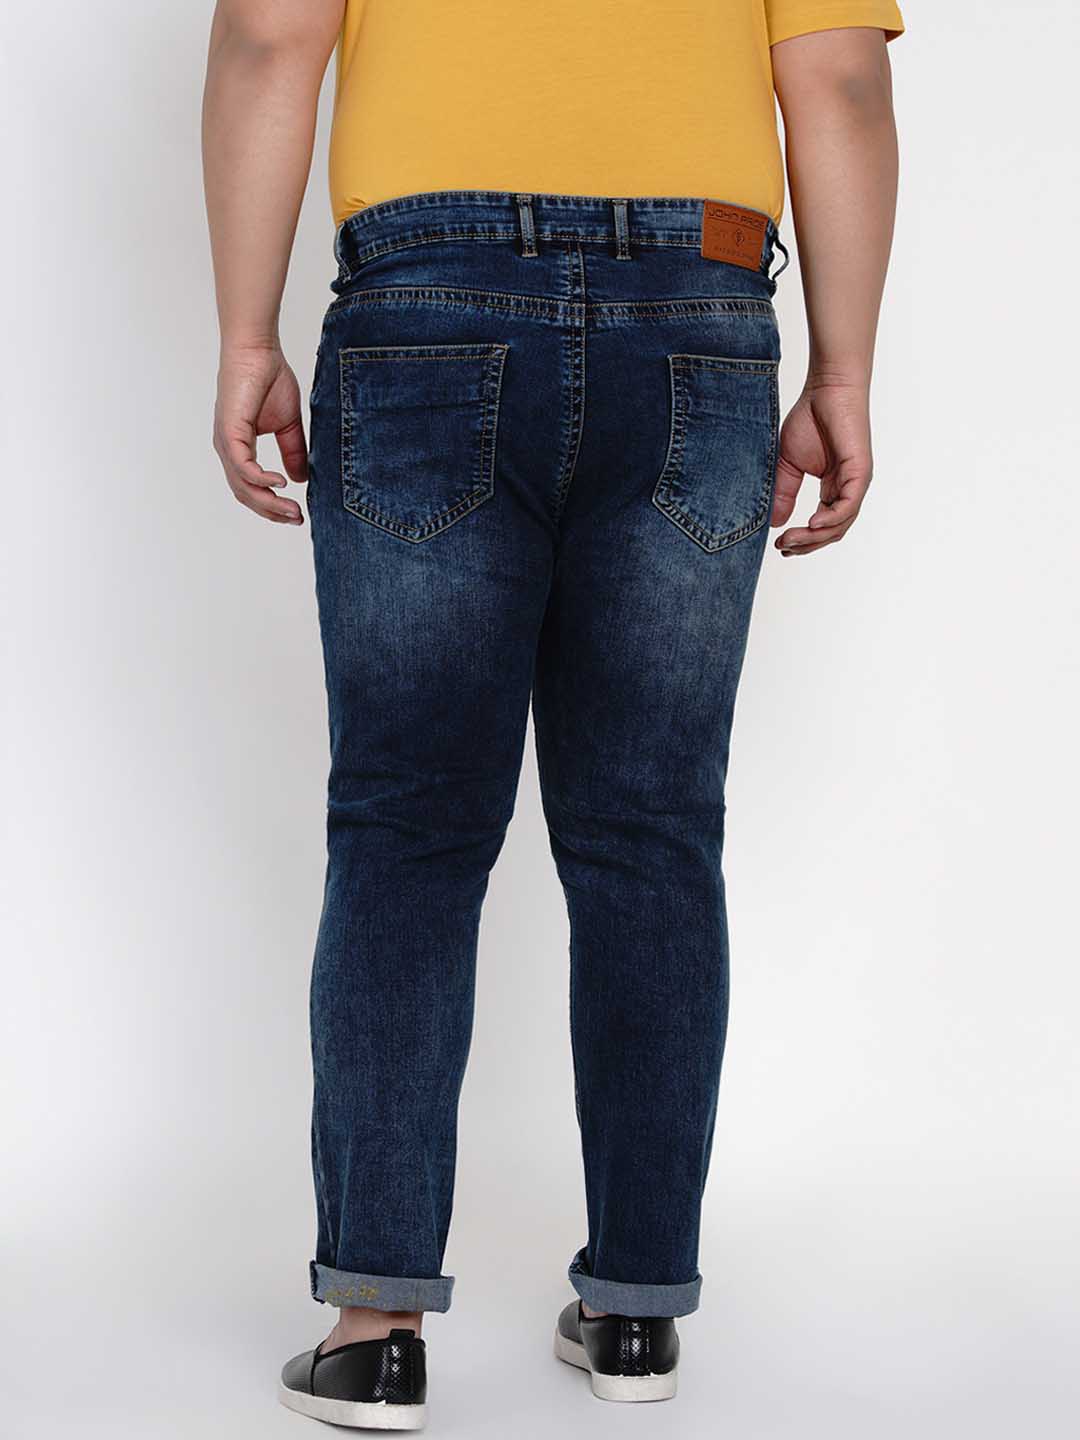 bottomwear/jeans/JPJ12111/jpj12111-4.jpg